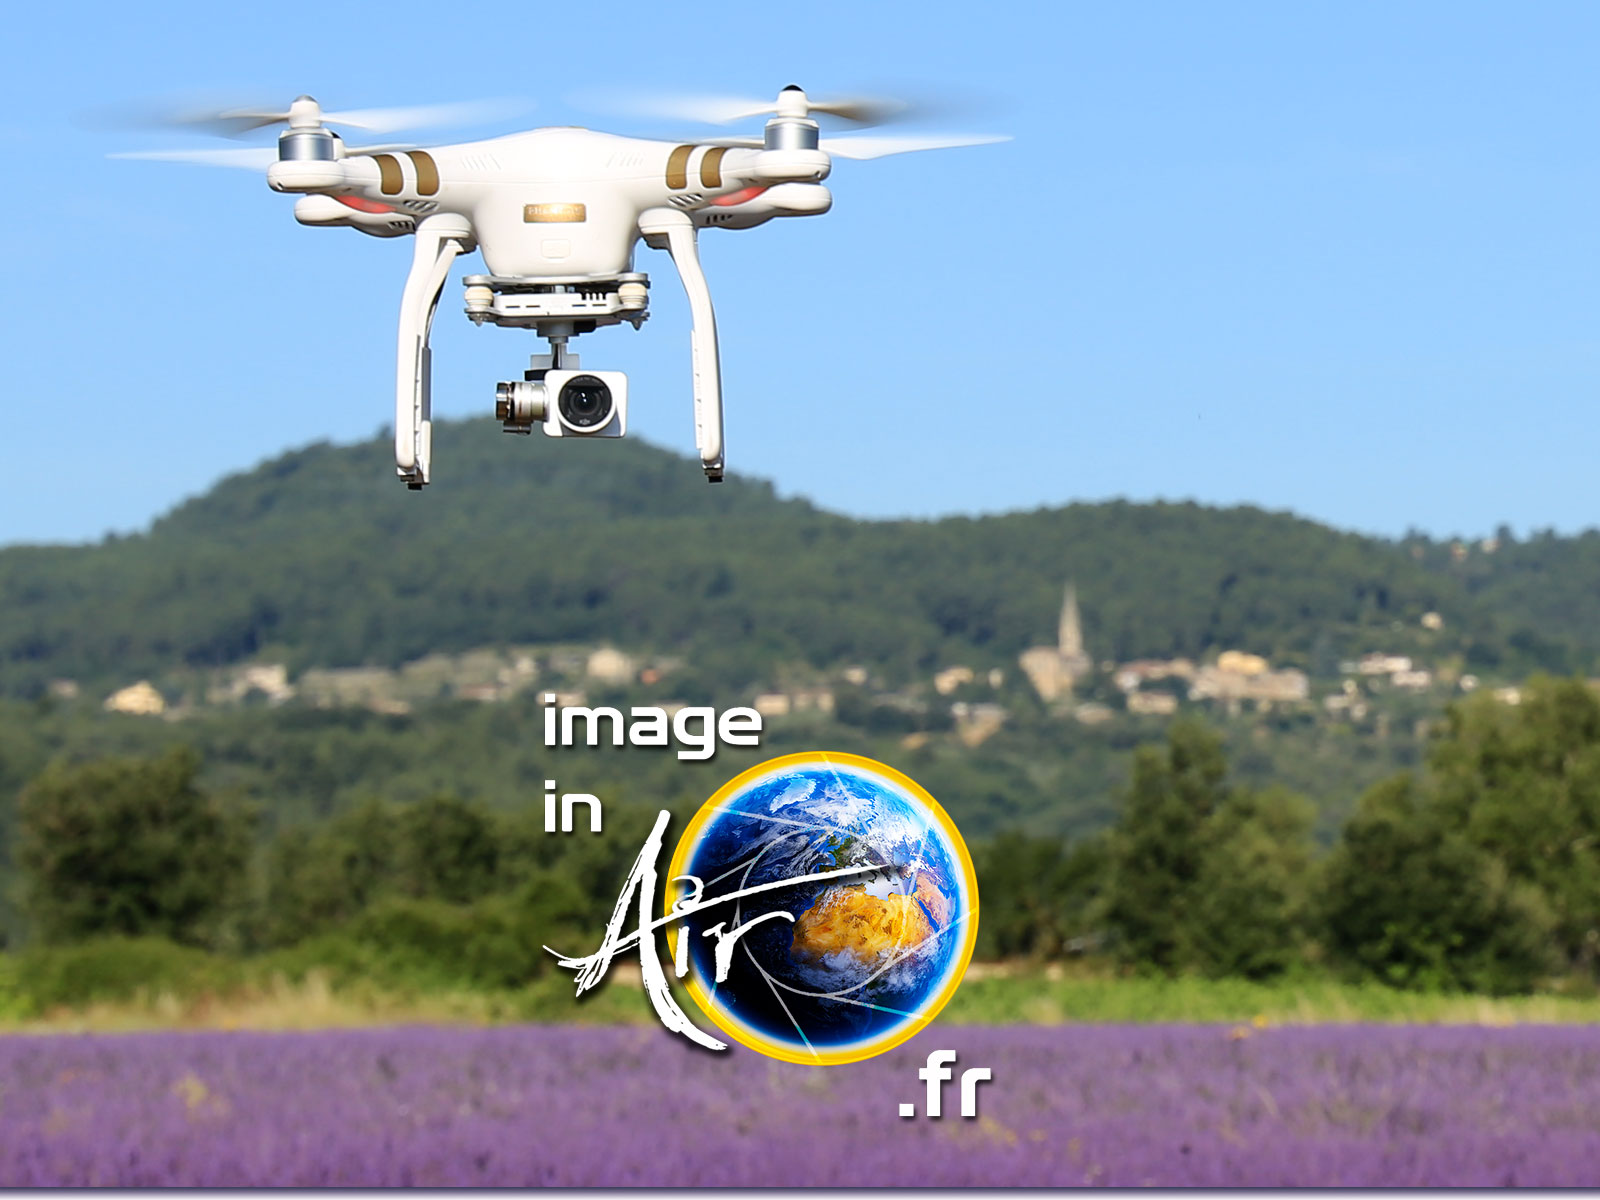 Photos et vidéos aériennes avec Image in air à l'aide d'un drone ou de l'autogire